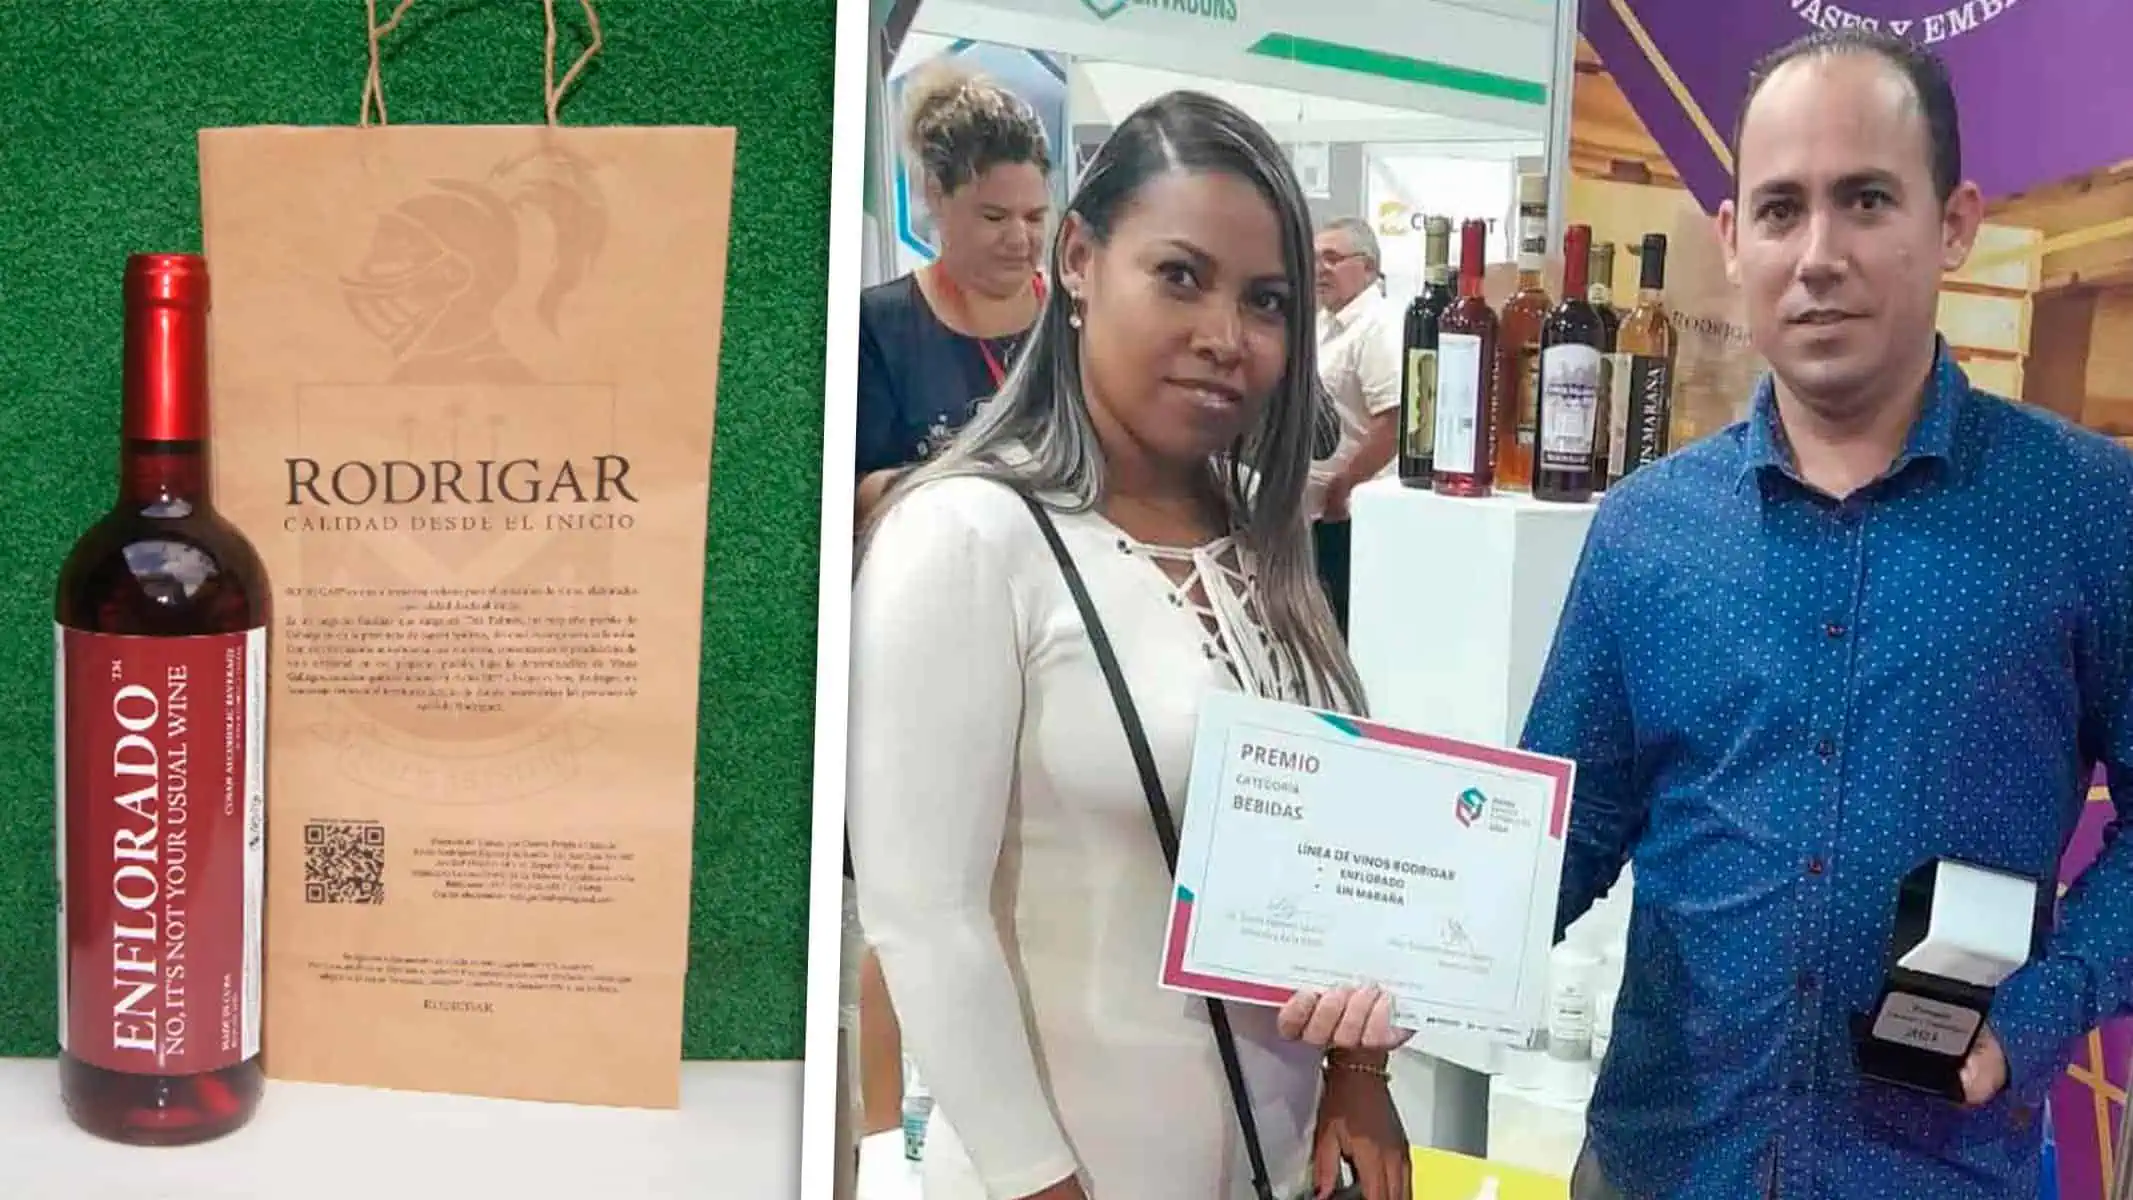 MiPyME Cubana Gana Premio por sus Bebidas: Conoce la Historia Detrás